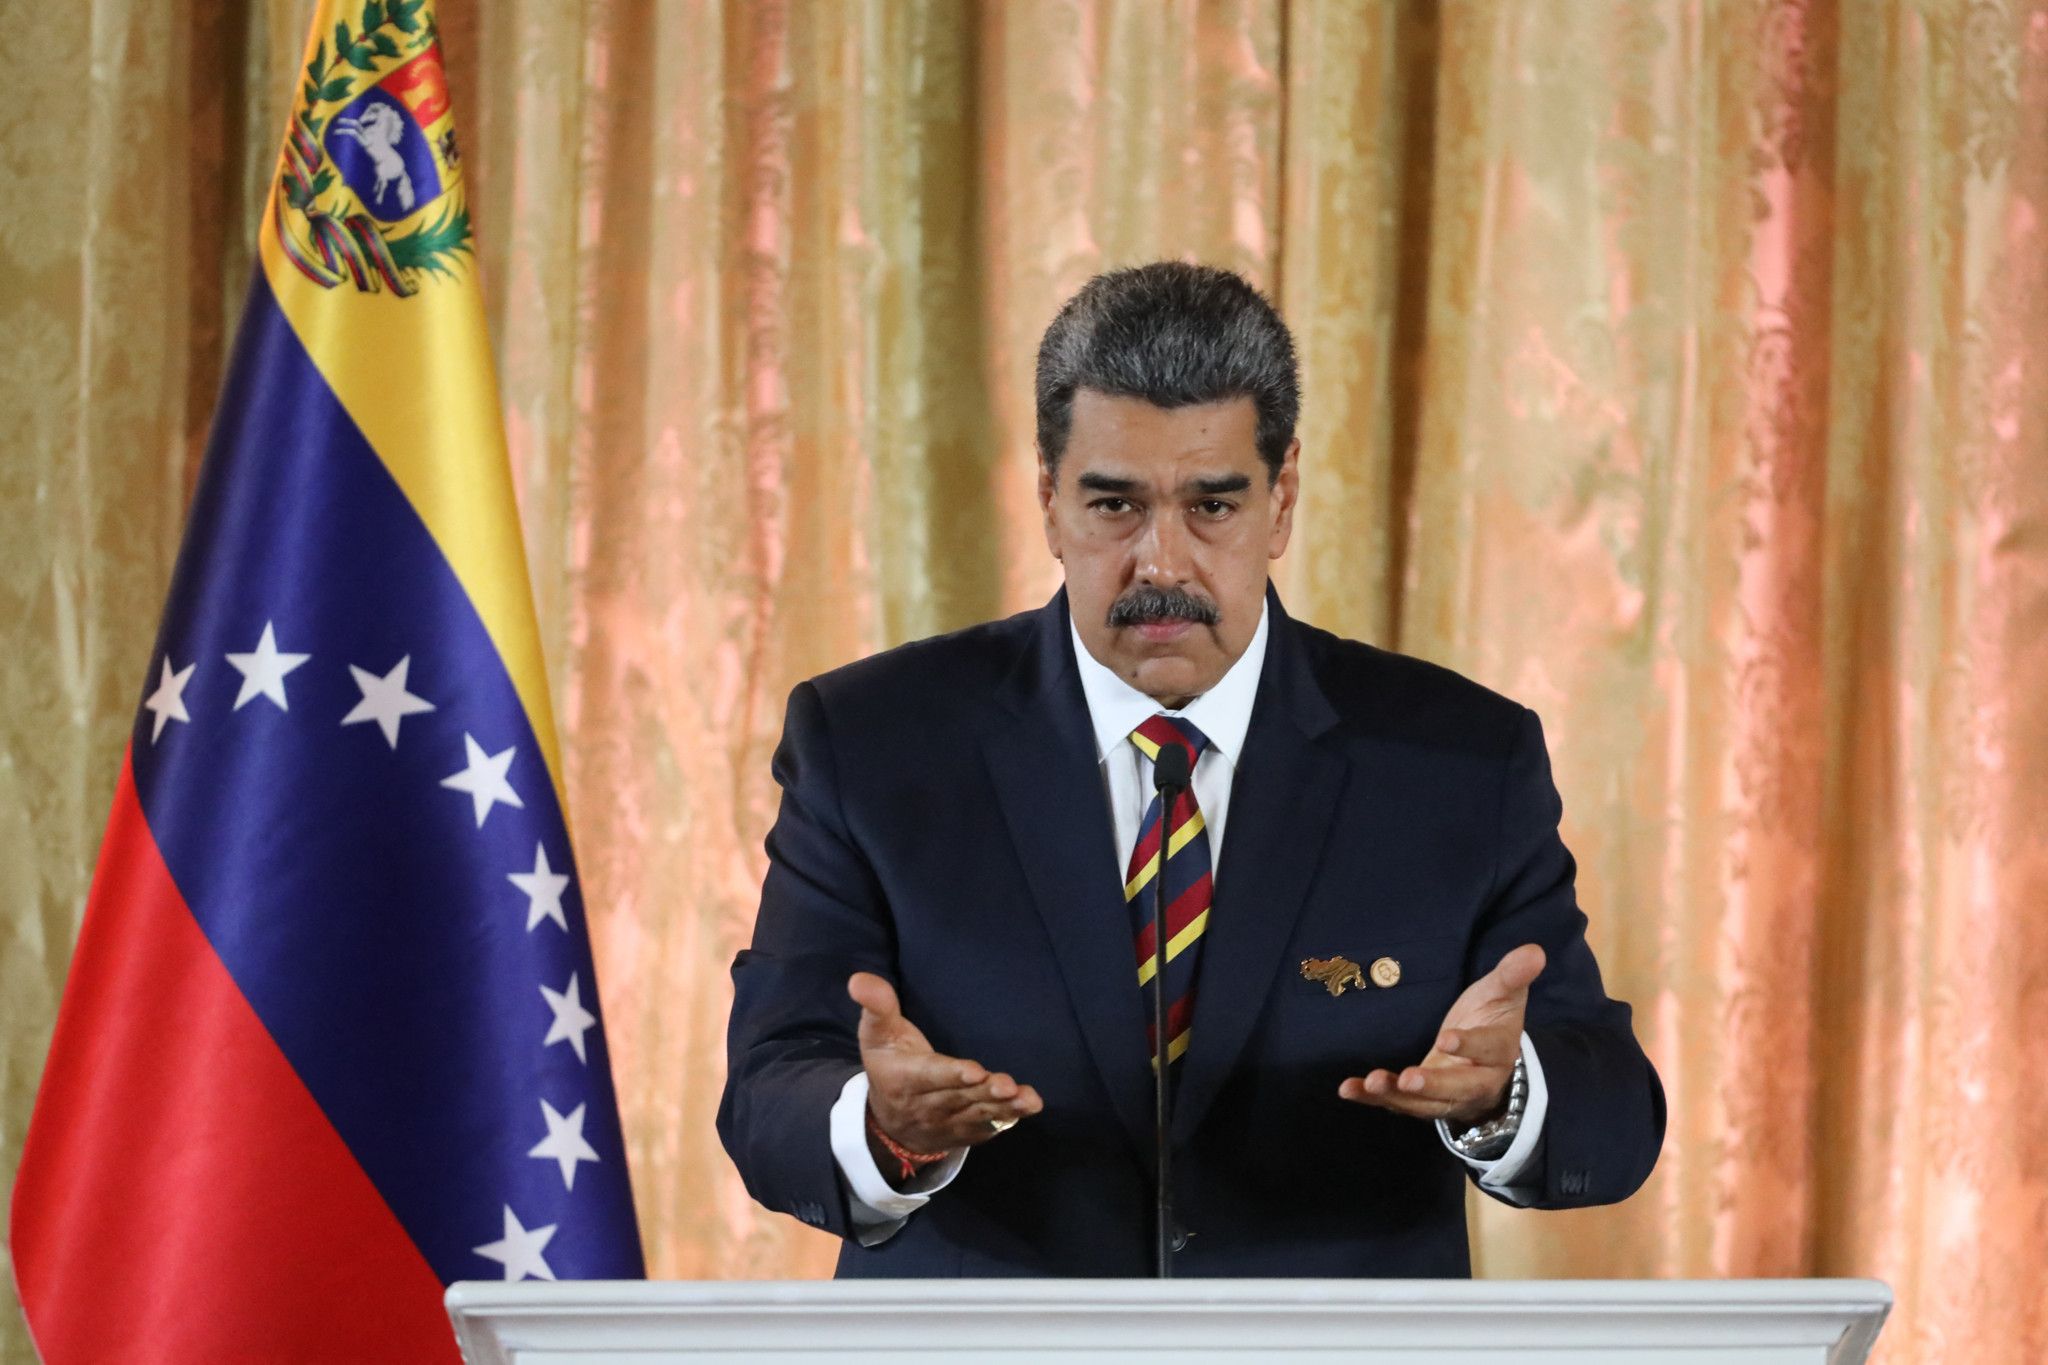 Des «bases secrètes» américaines dans l'Essequibo, accuse Maduro